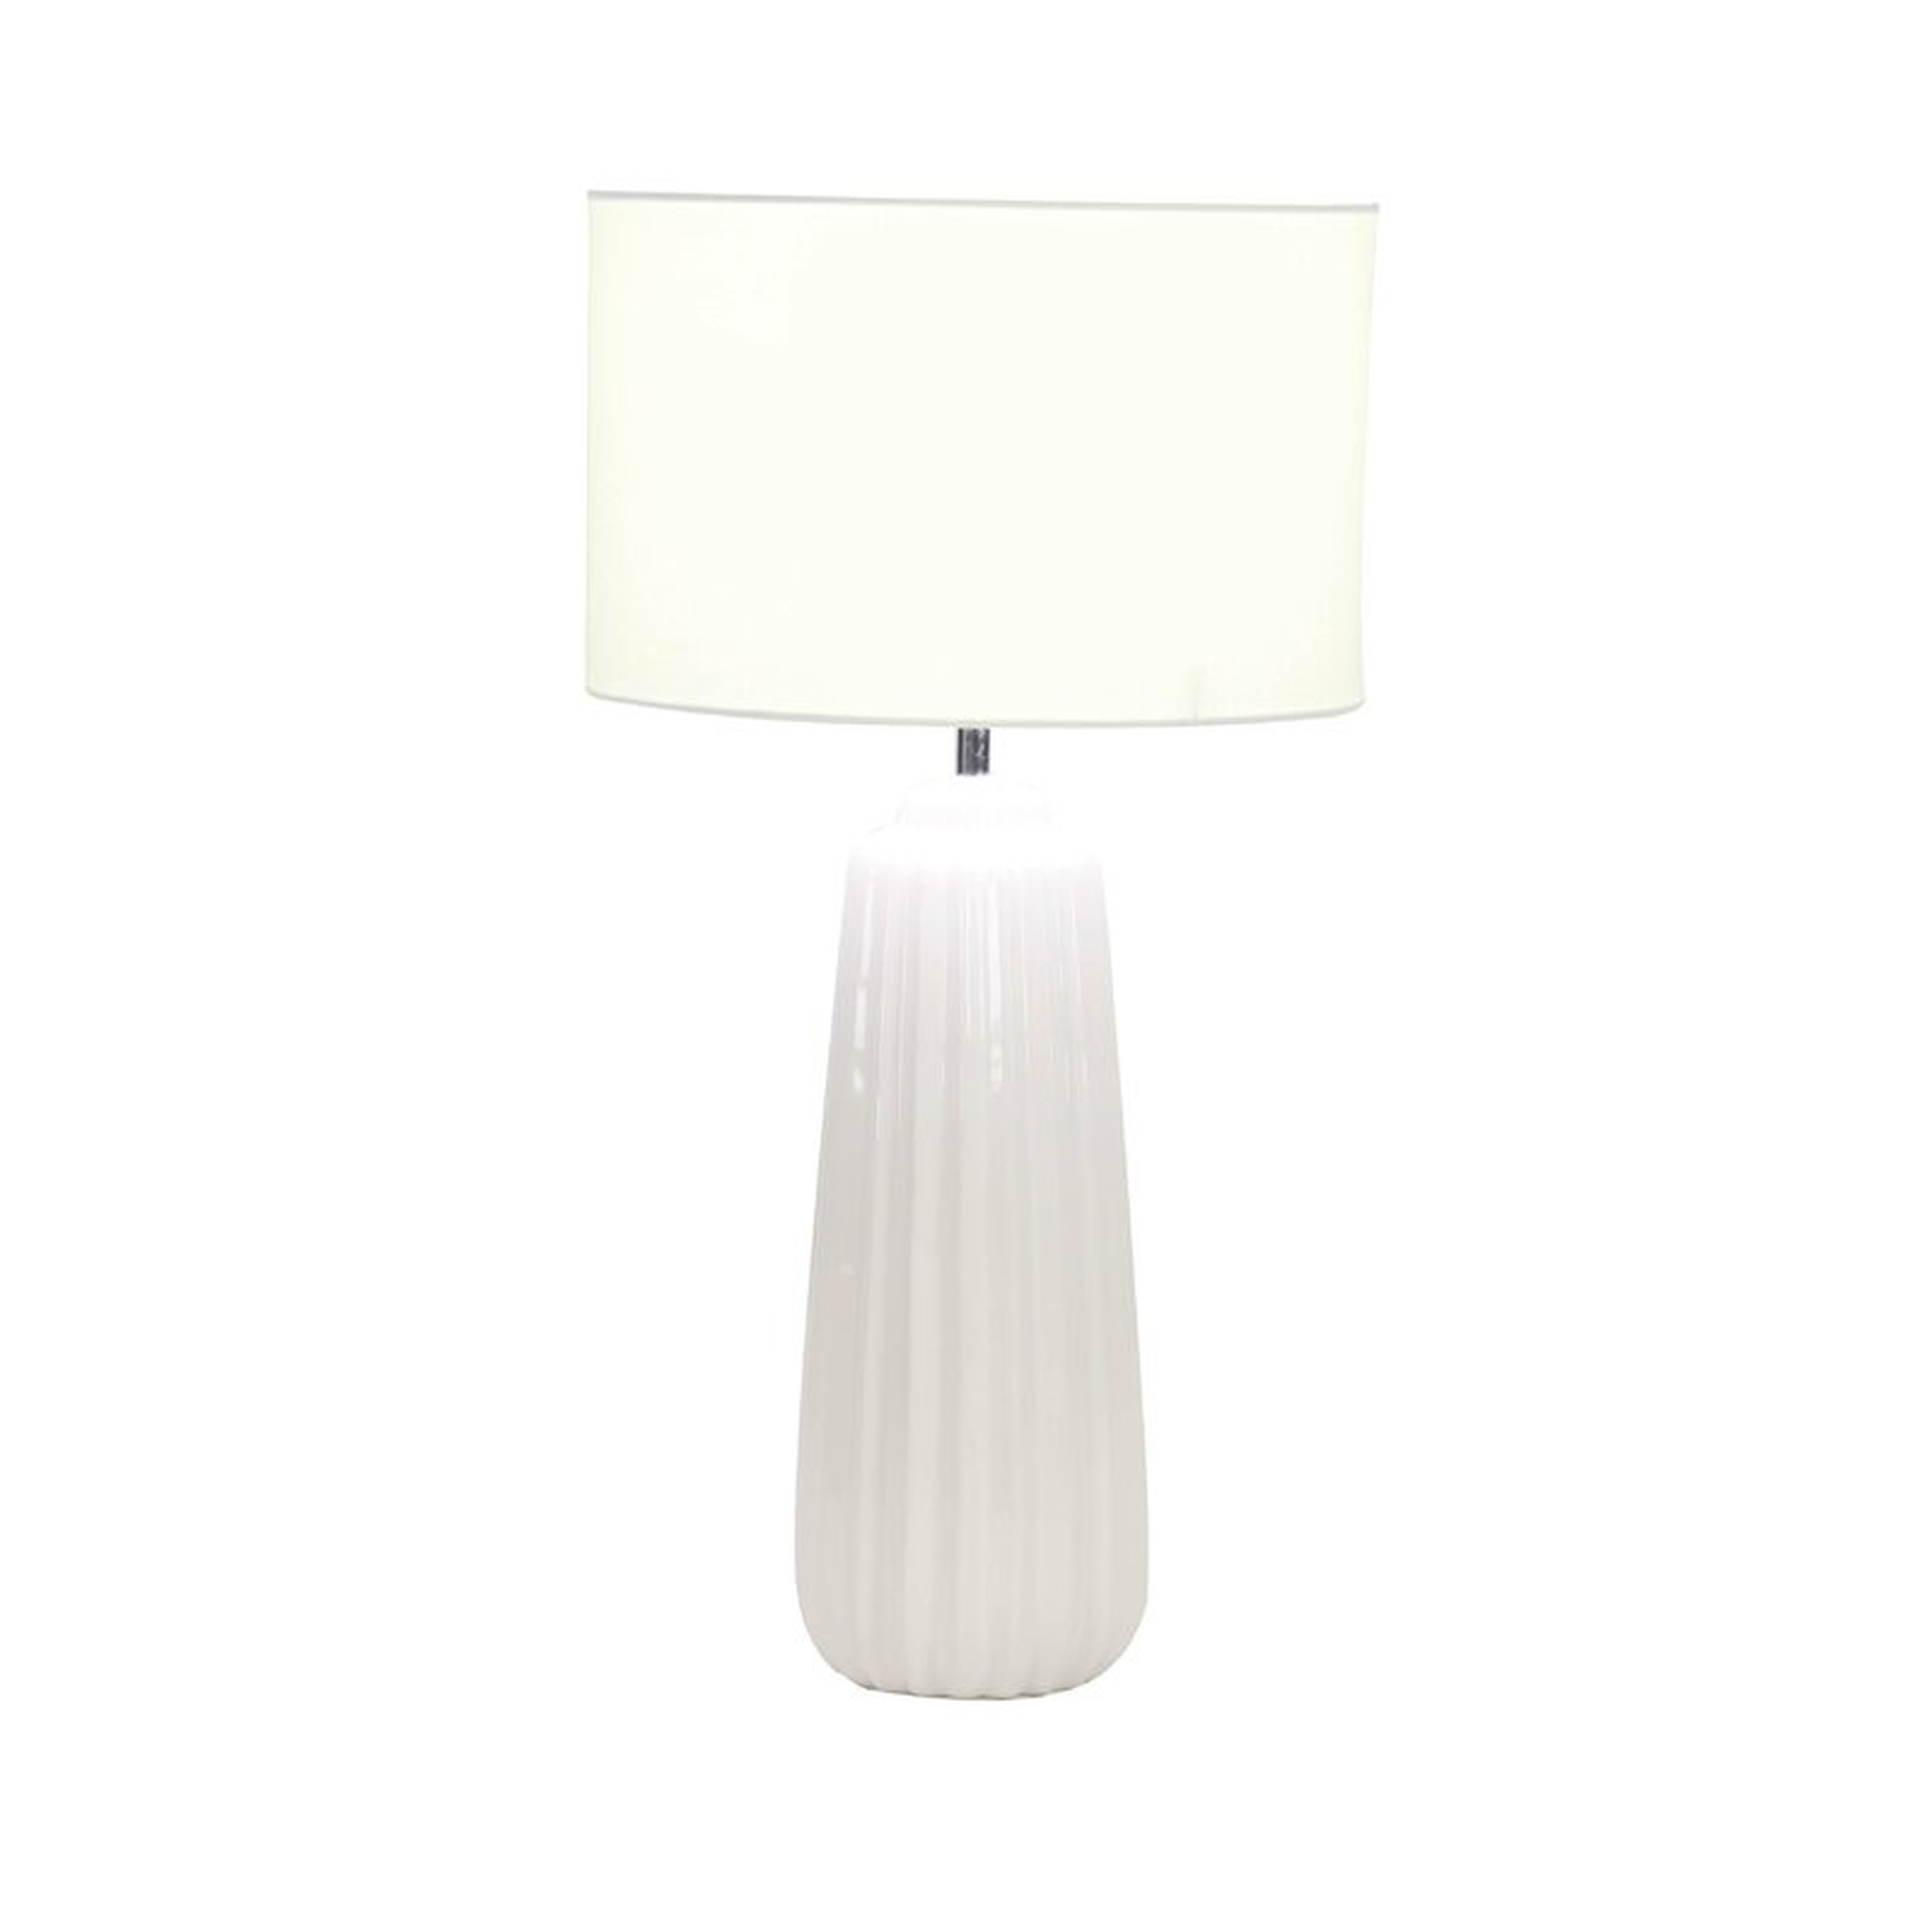 24" H x 13" W x 13" D White Base/White Shade Cahoon Table Lamp - Wayfair